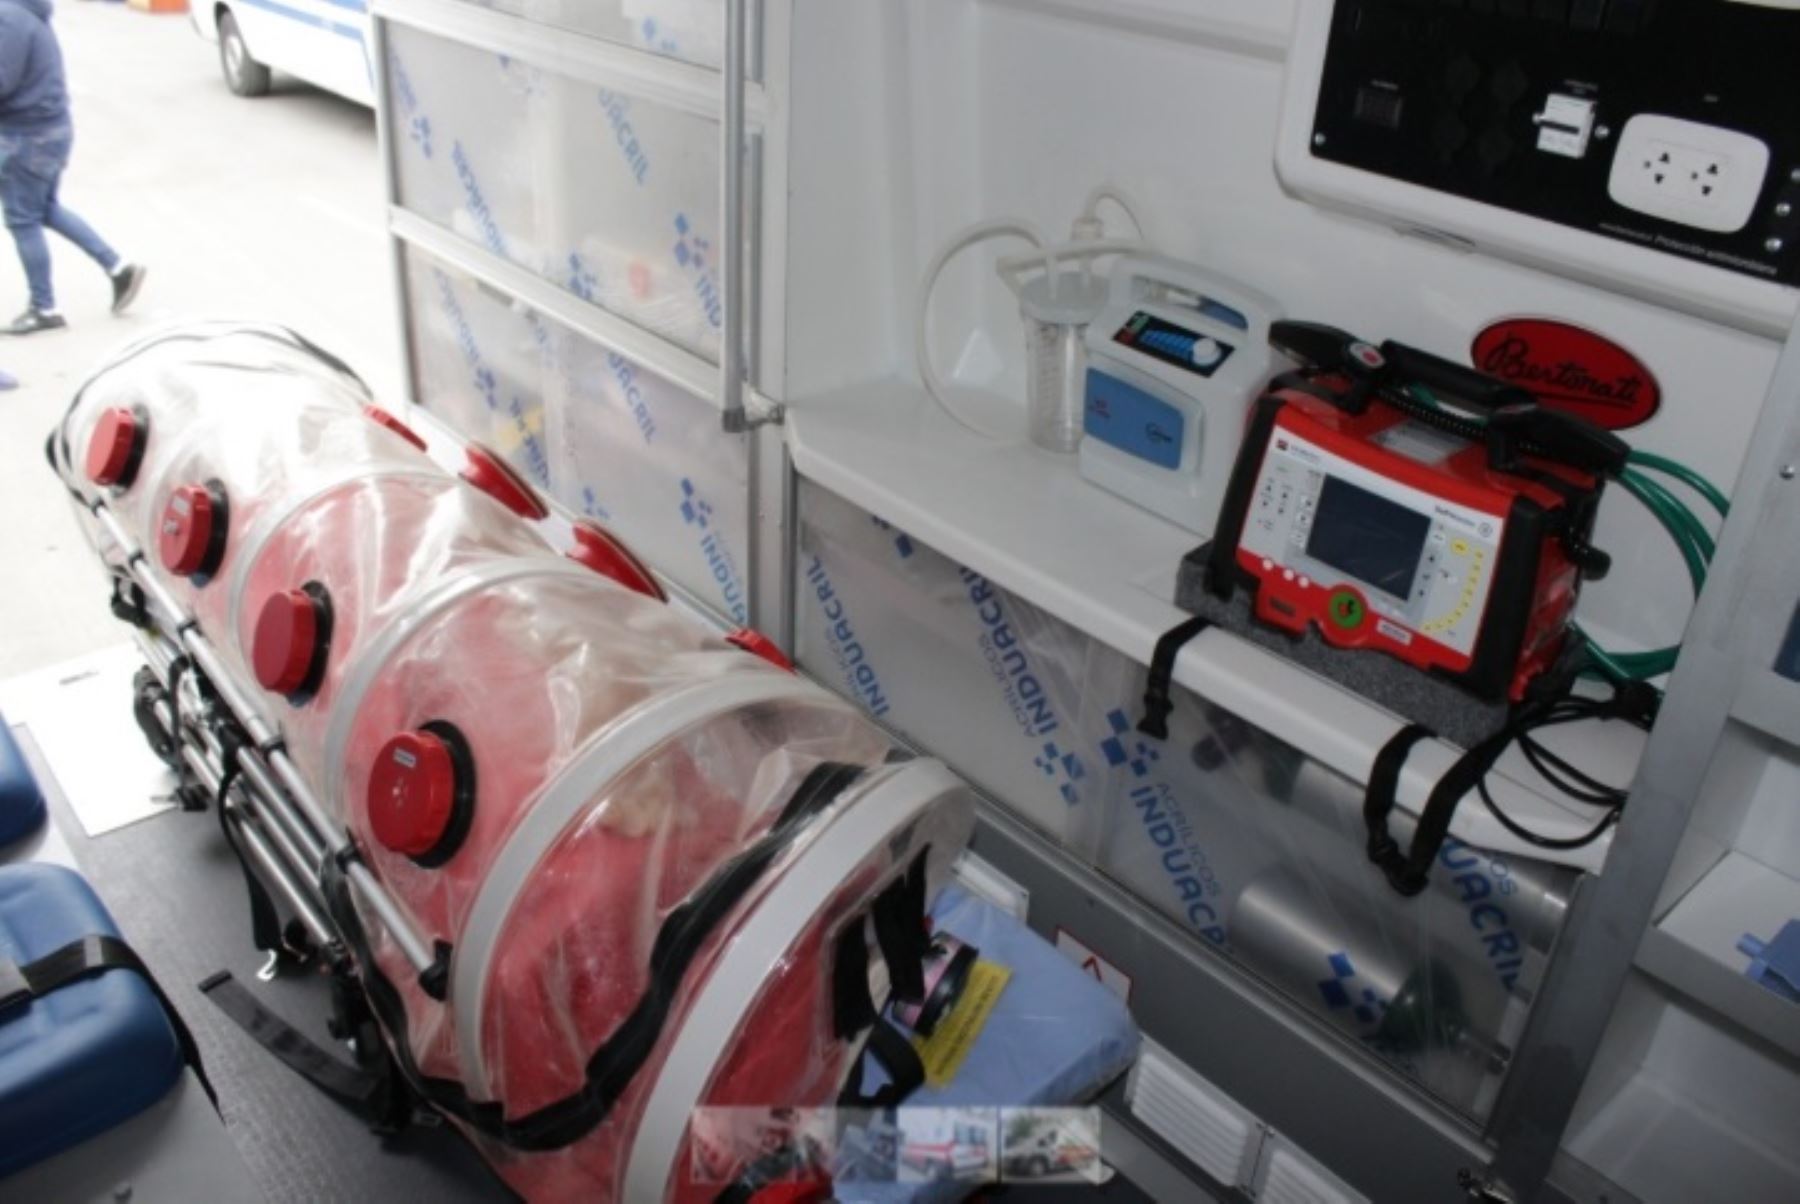 El hospital La Caleta de Chimbote, en la región Áncash, recibió hoy dos ambulancias urbanas tipo III equipadas con cápsulas para el traslado de pacientes diagnosticados o con sospecha de haber adquirido el covid-19.